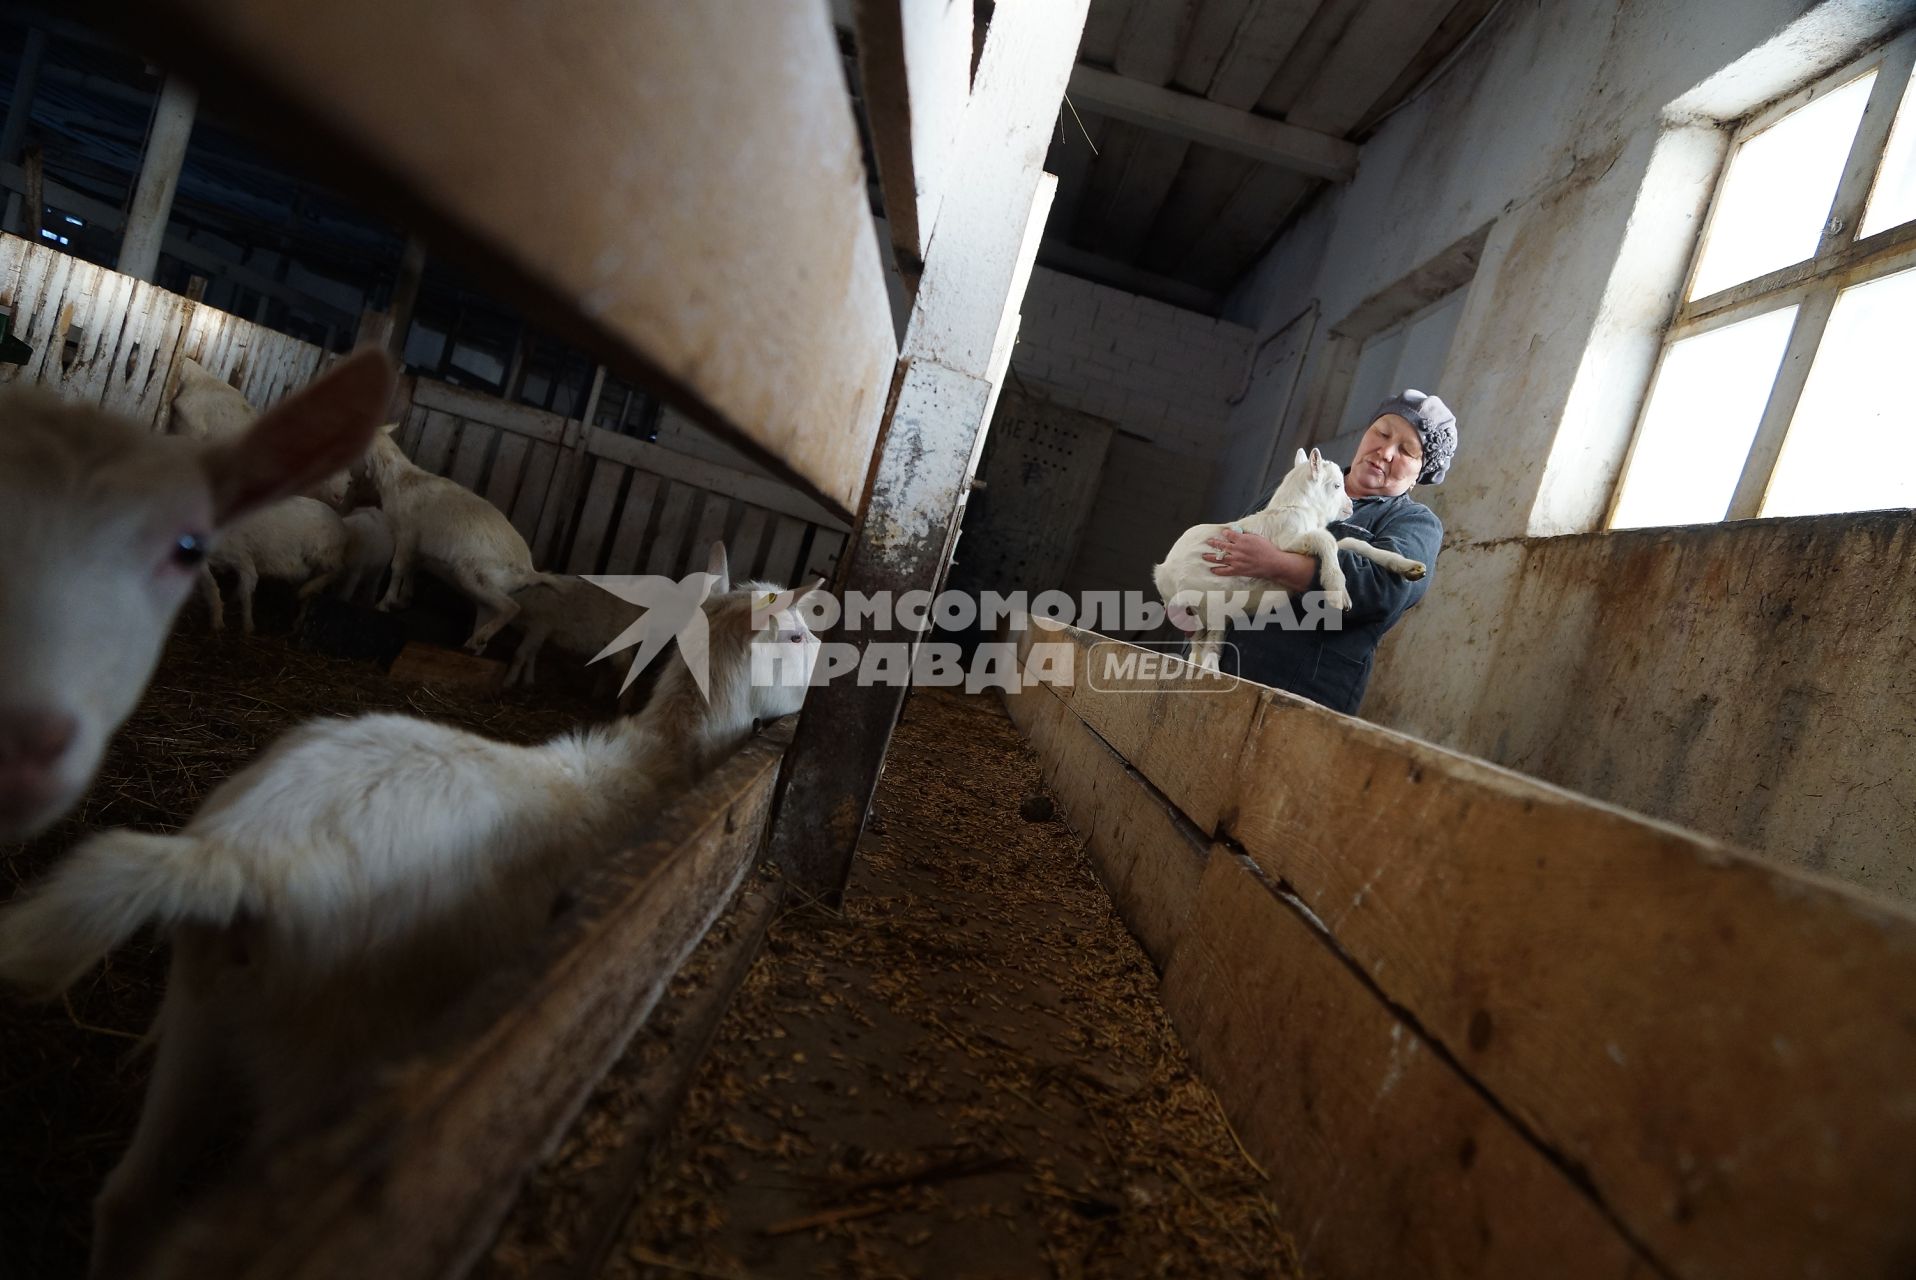 доярка держит на руках маленького козленка, на сельхозпредприятии по выращиванию коз и производству козьего молока – научно-производственный кооператив «Ачитский»